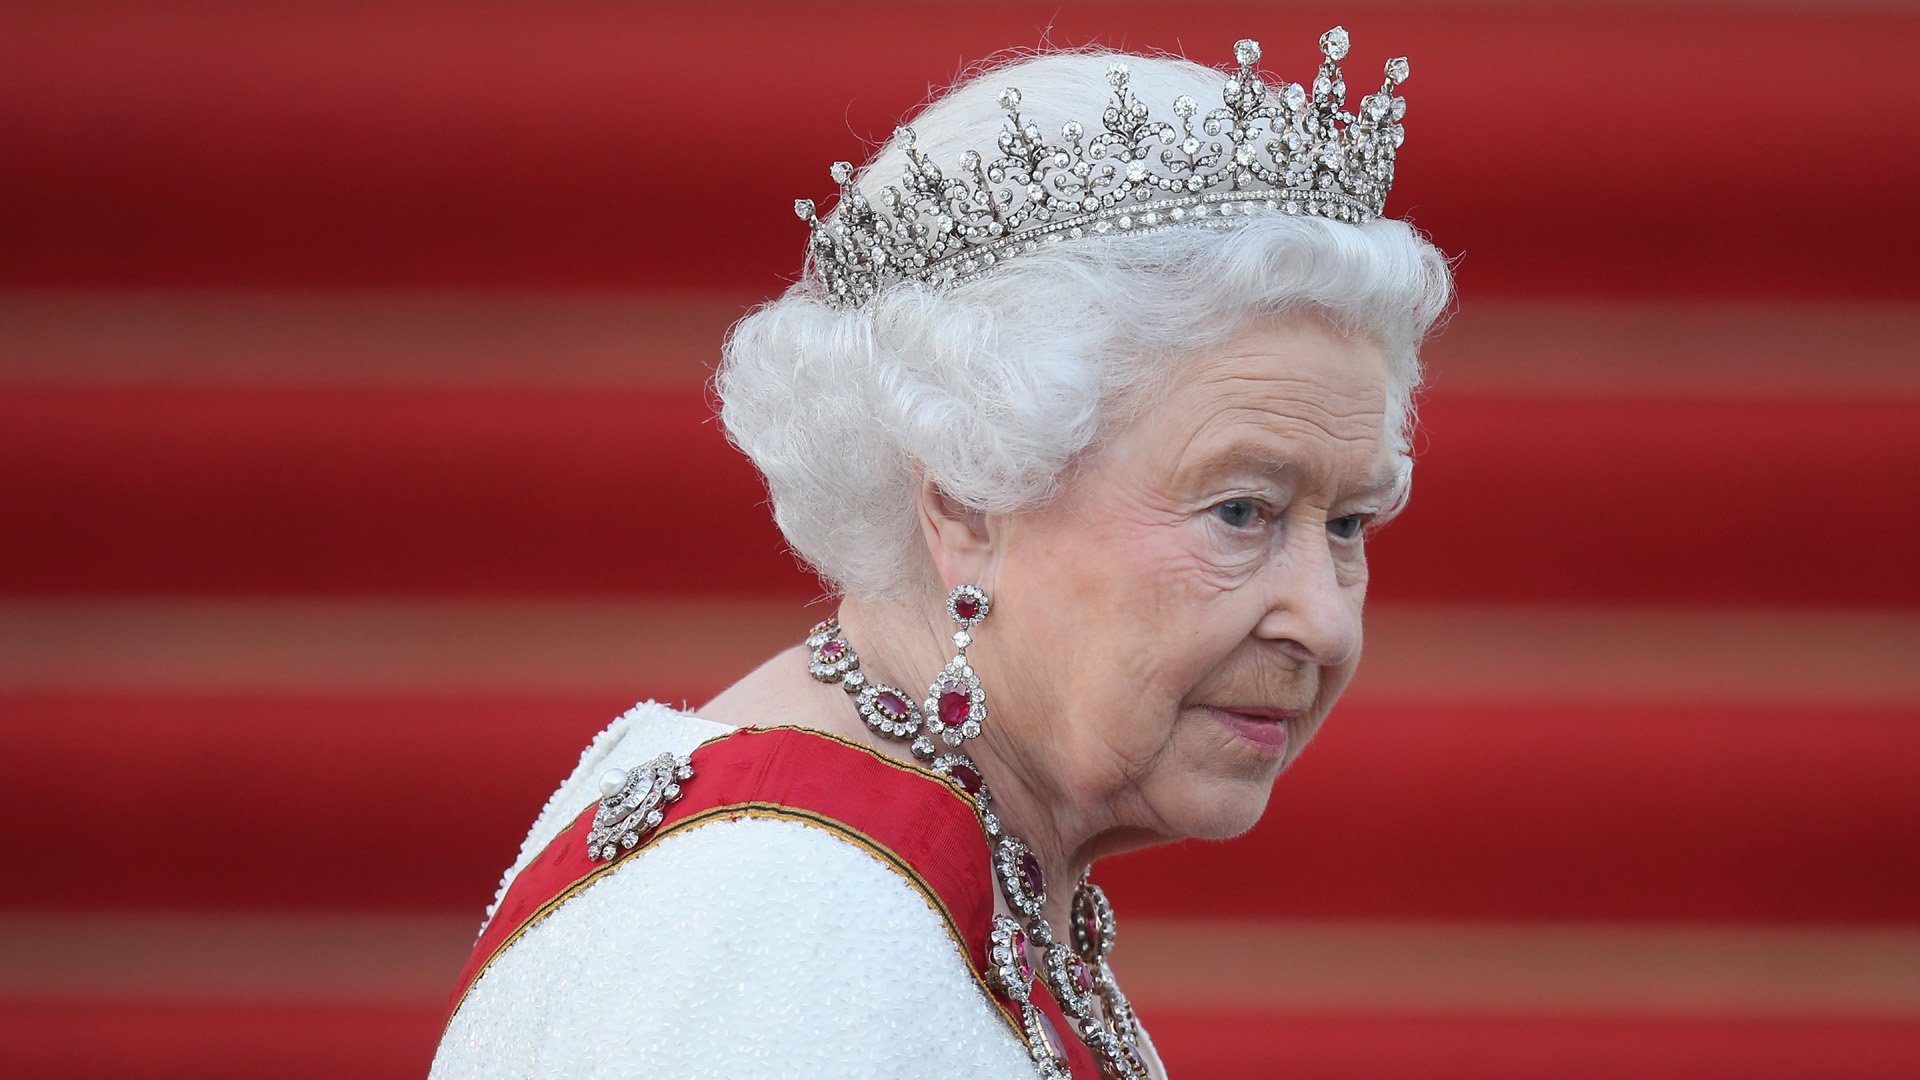 تصویر شکوهمند از ملکه الیزابت با تم رنگی قرمز و سفید 